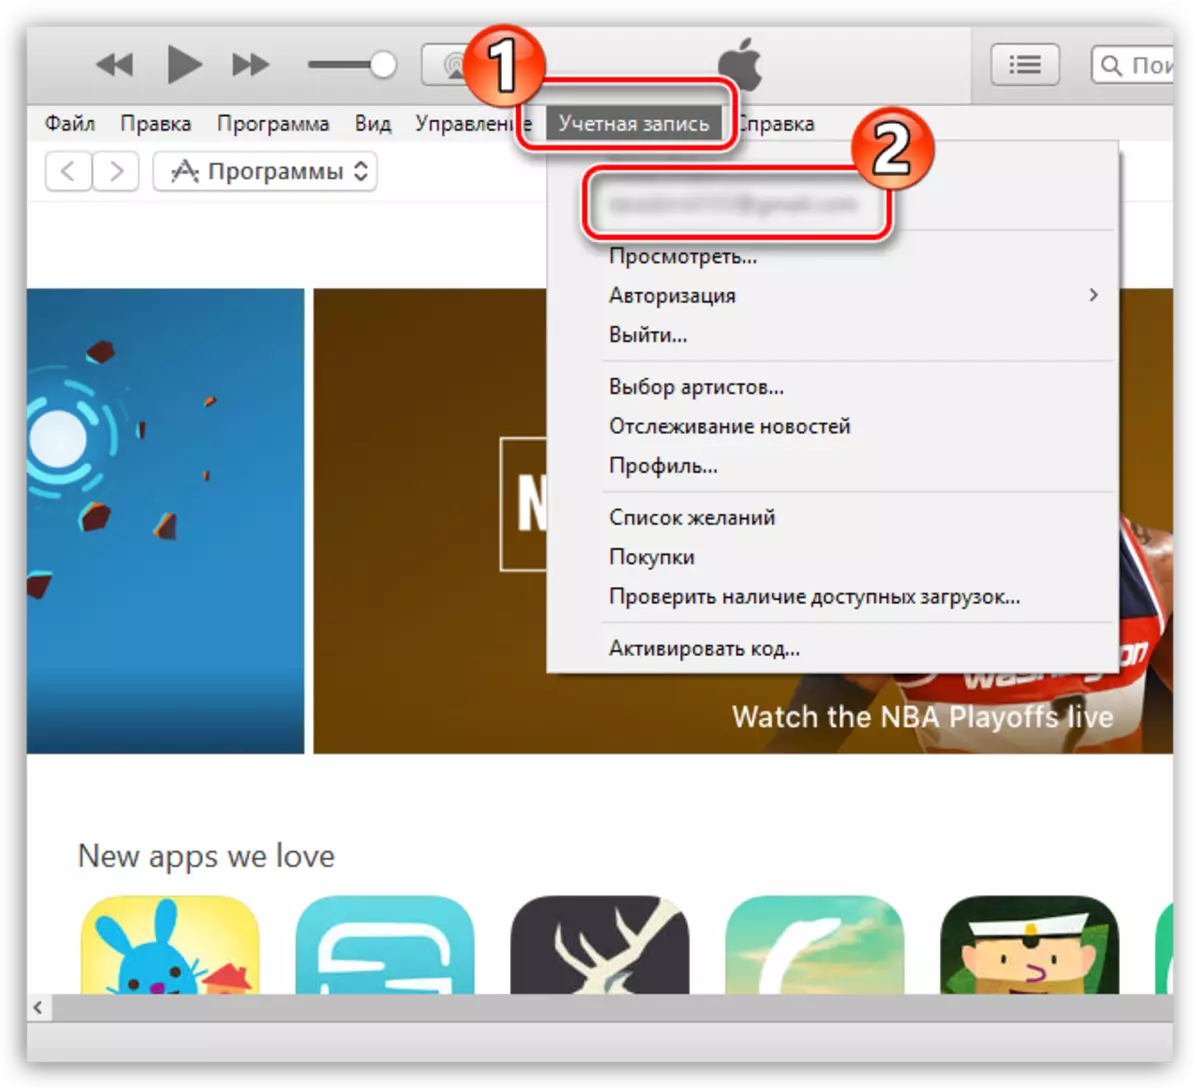 Eeg Aqoonsiga Apple Apple iyada oo loo marayo menu-ka iTunes